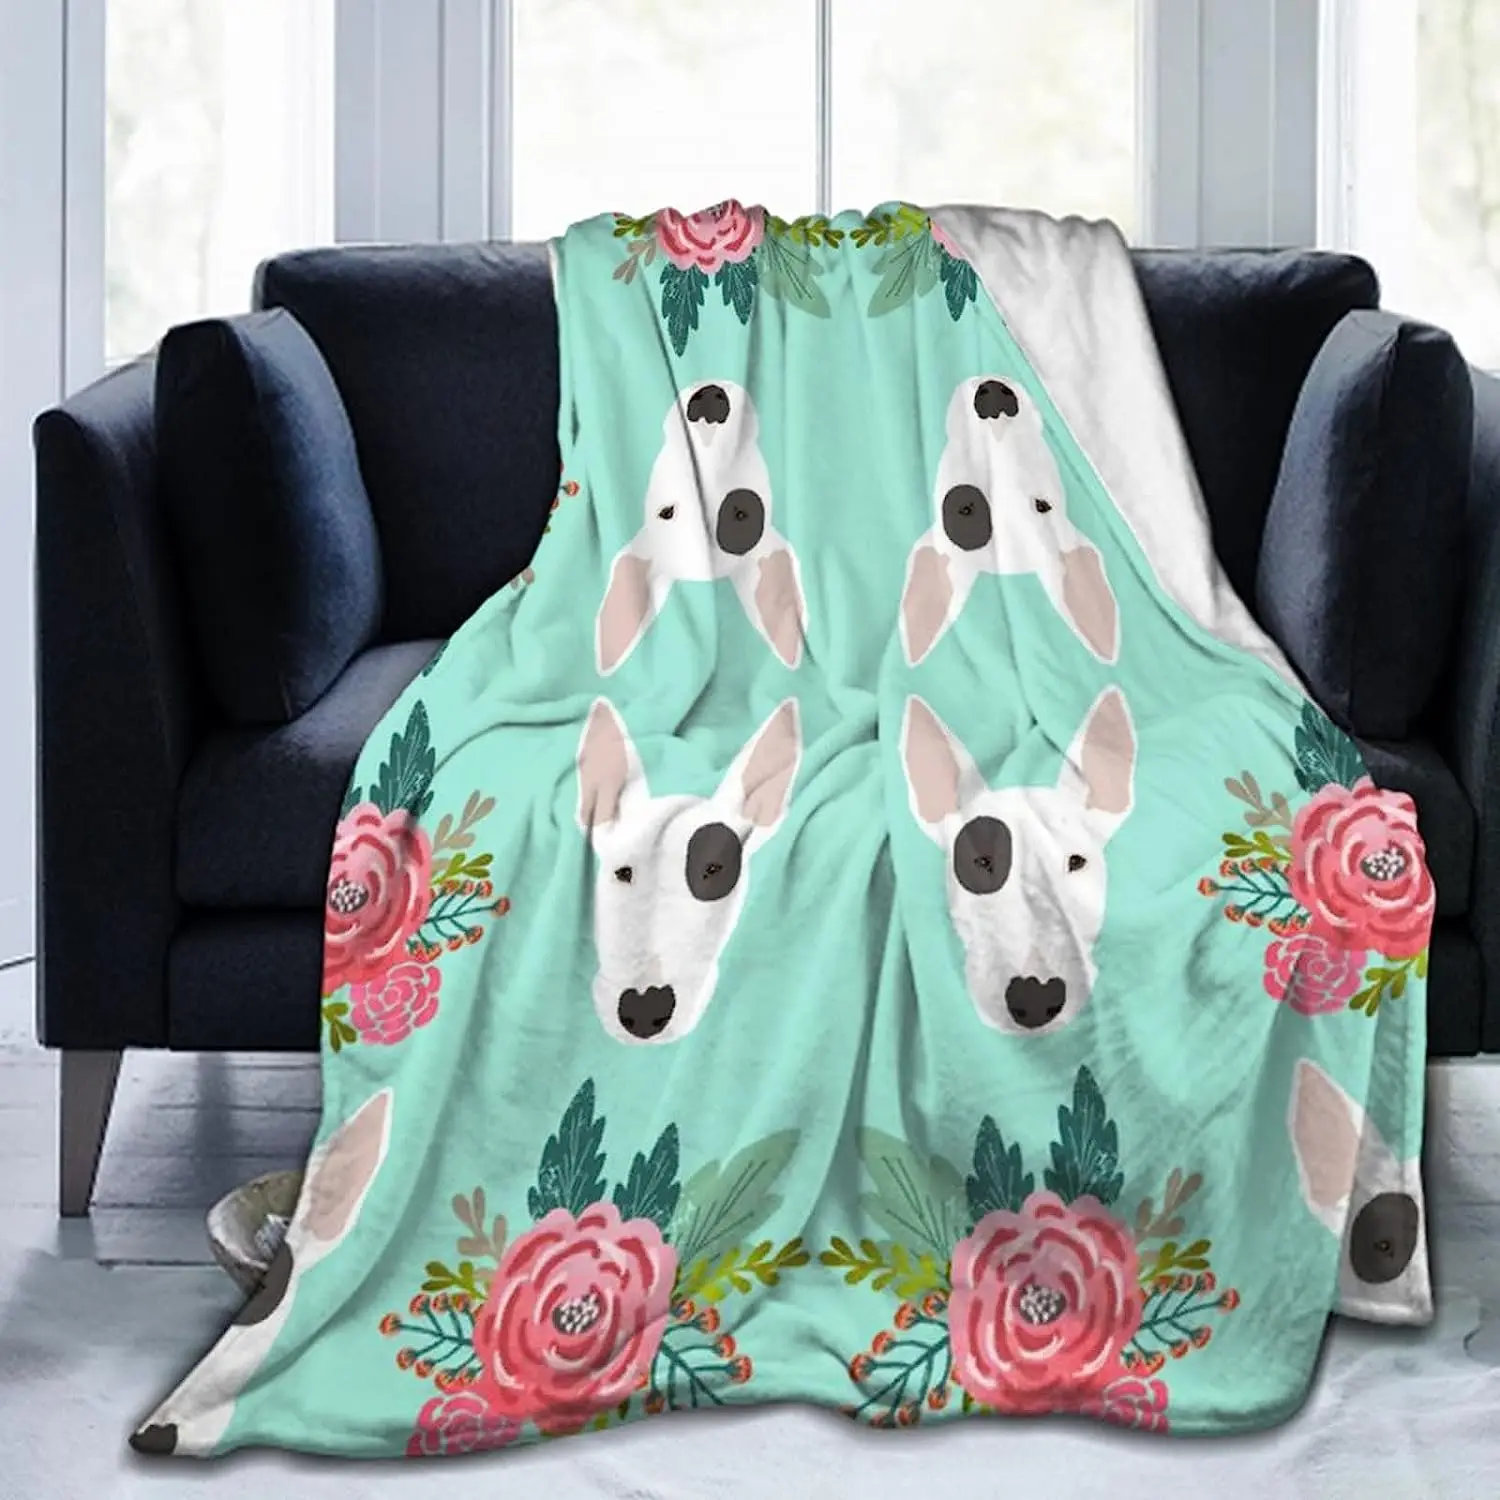 

Мягкое фланелевое одеяло премиум-класса, элегантное удобное покрывало для дивана, шезлонга, с цветочным рисунком, с рисунком быка